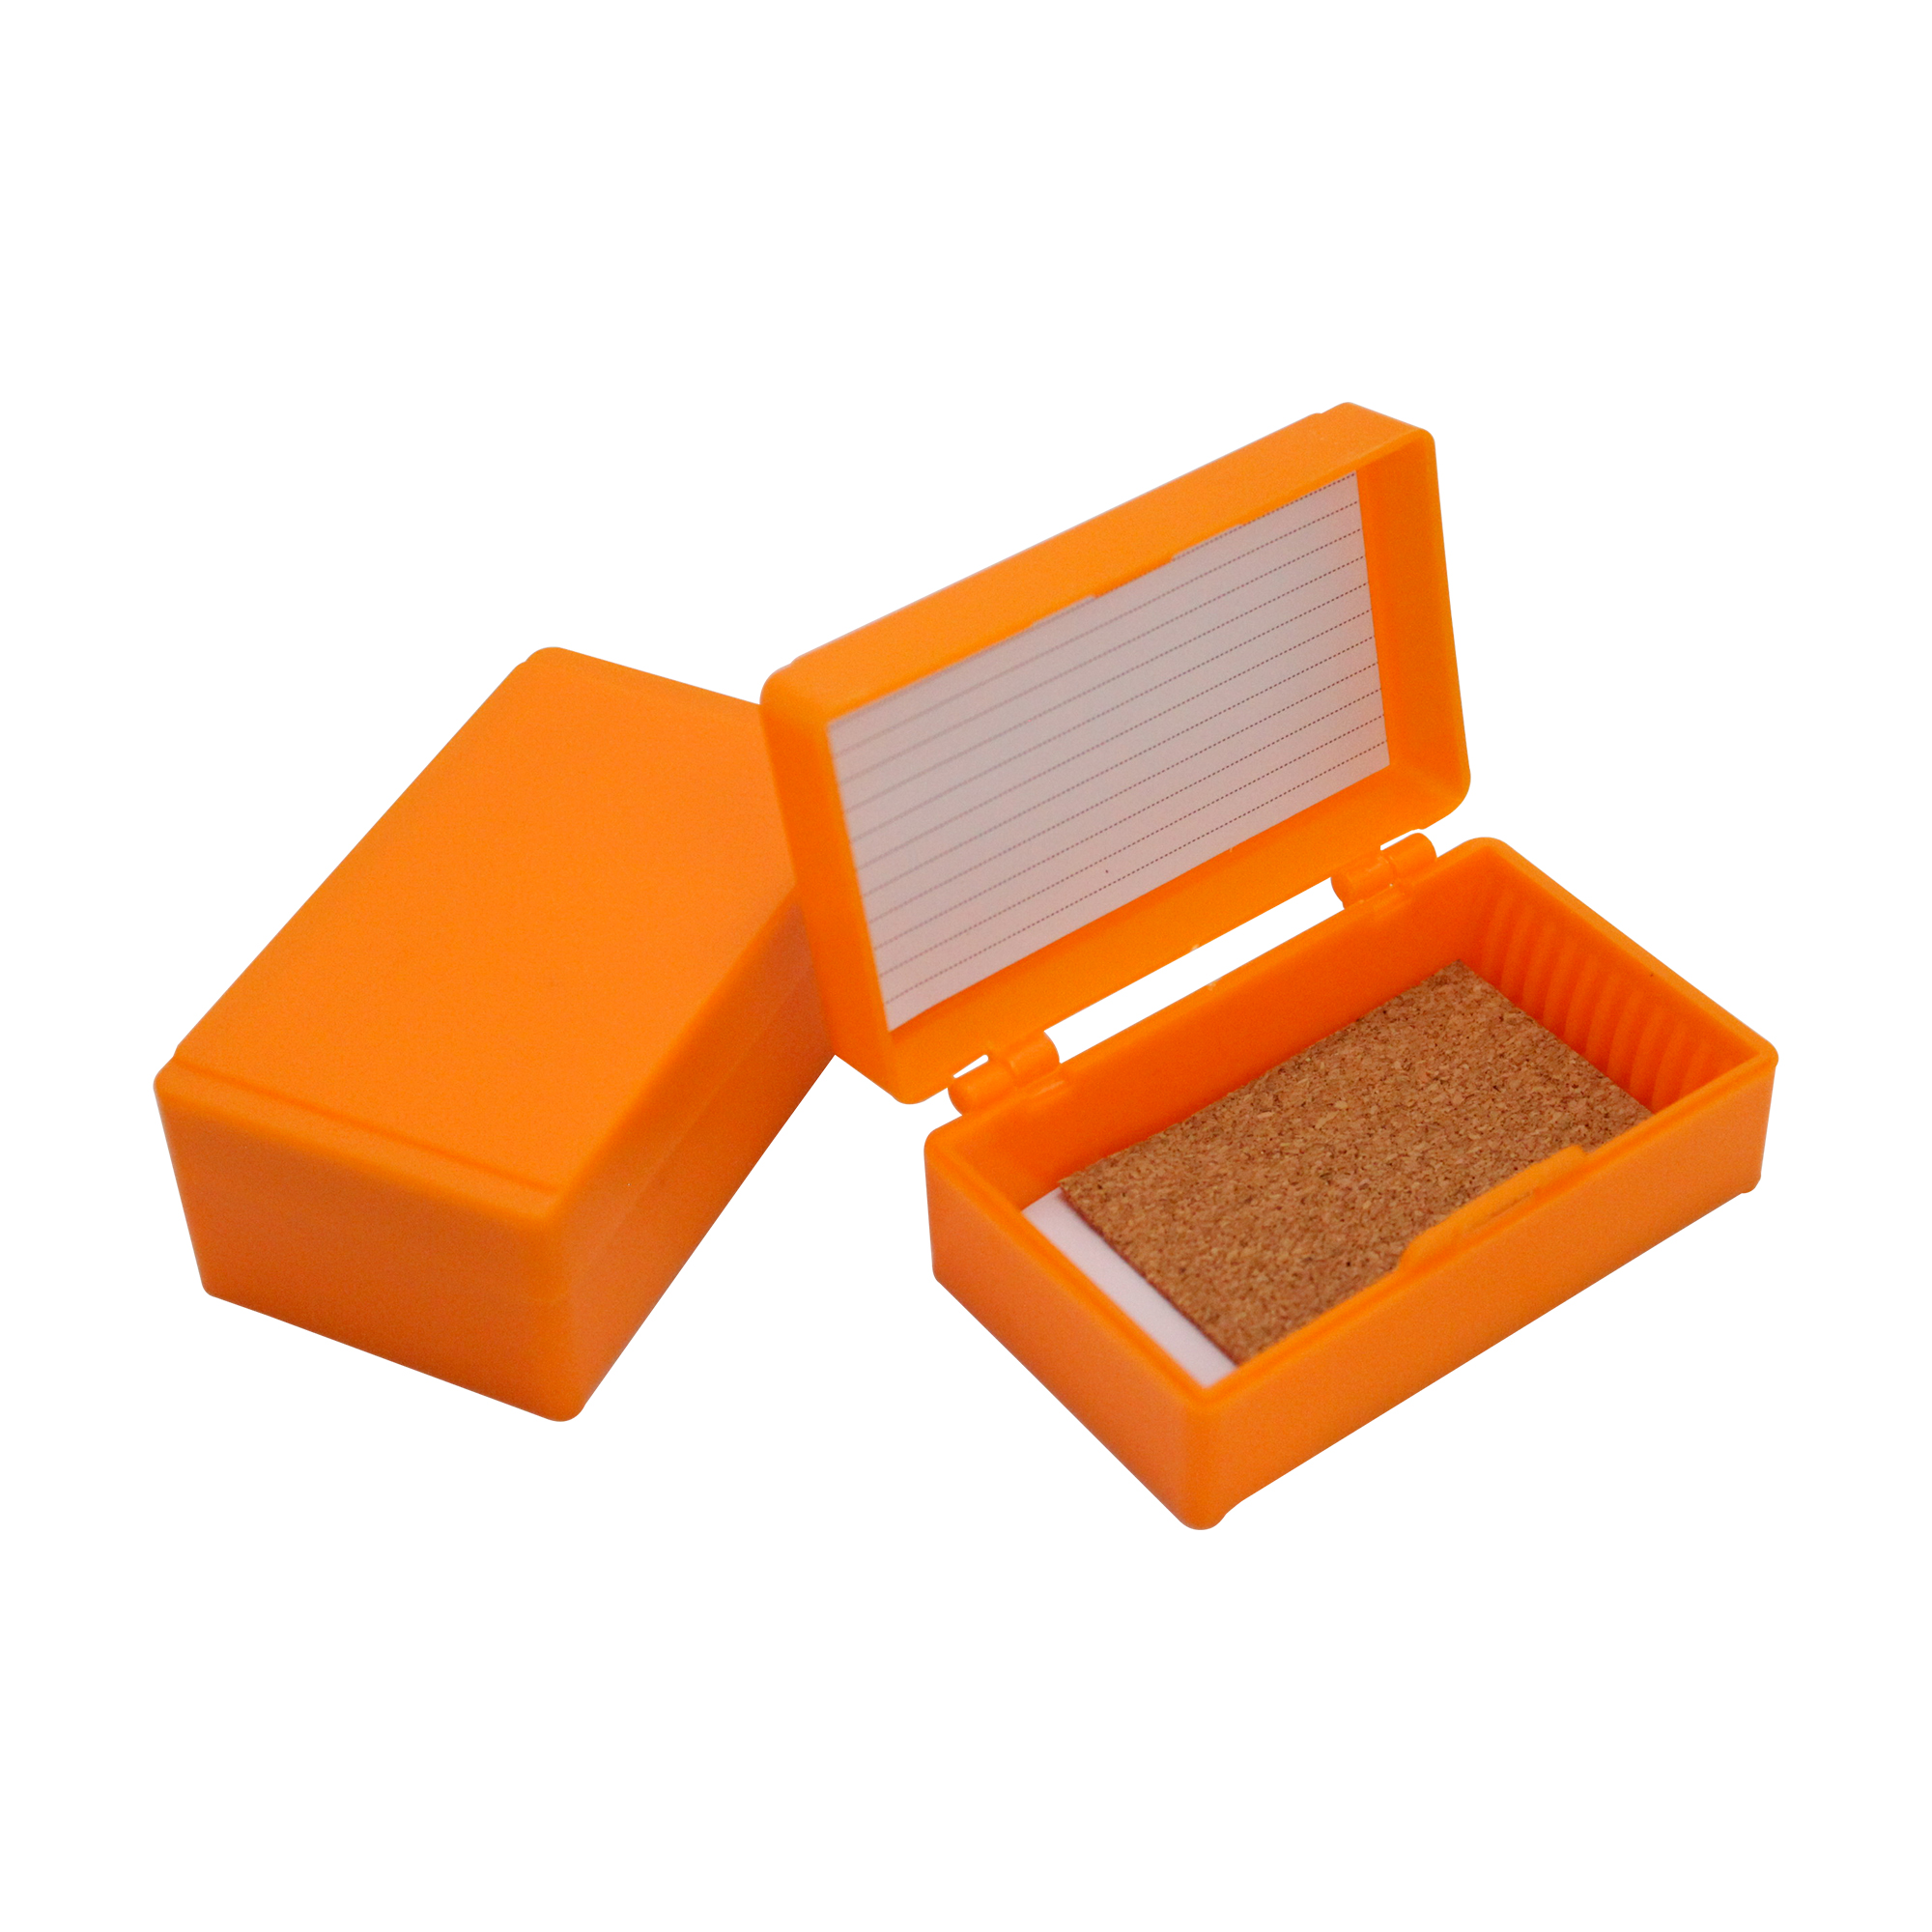 12片装载玻片存储盒,橘色